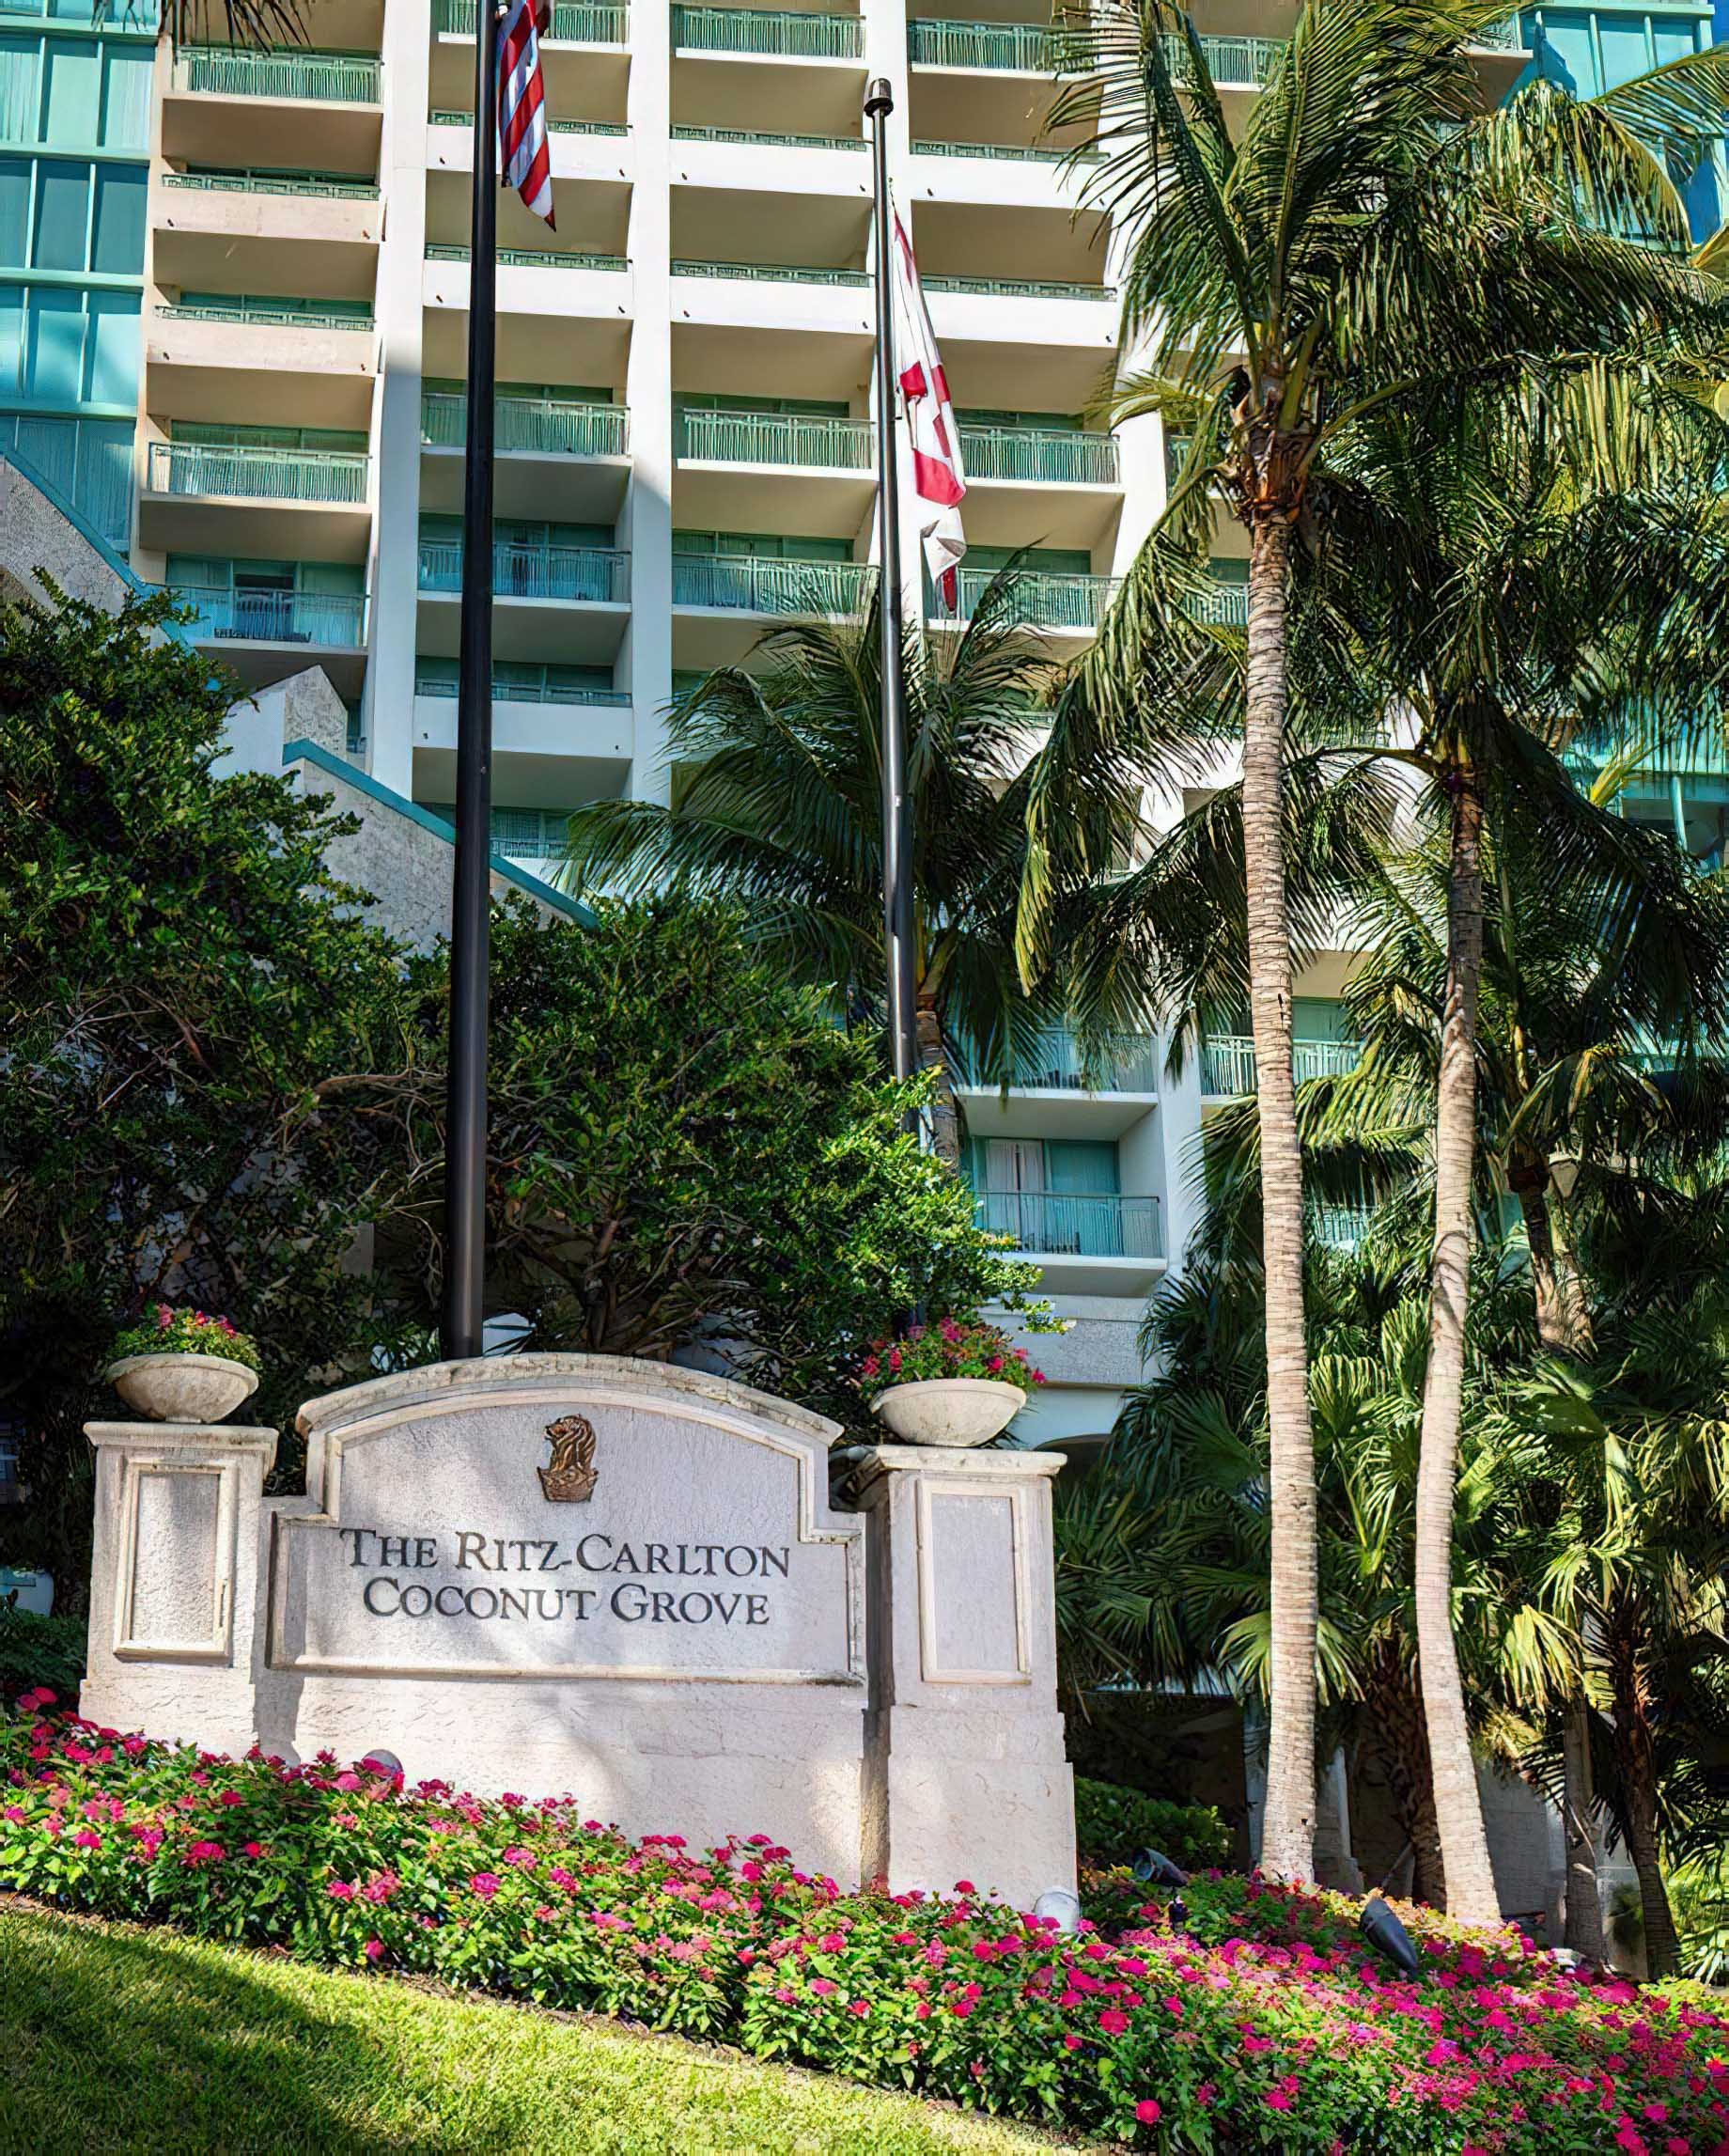 The Ritz-Carlton Coconut Grove, Miami Hotel - Miami, FL, USA - Front Entrance Sign